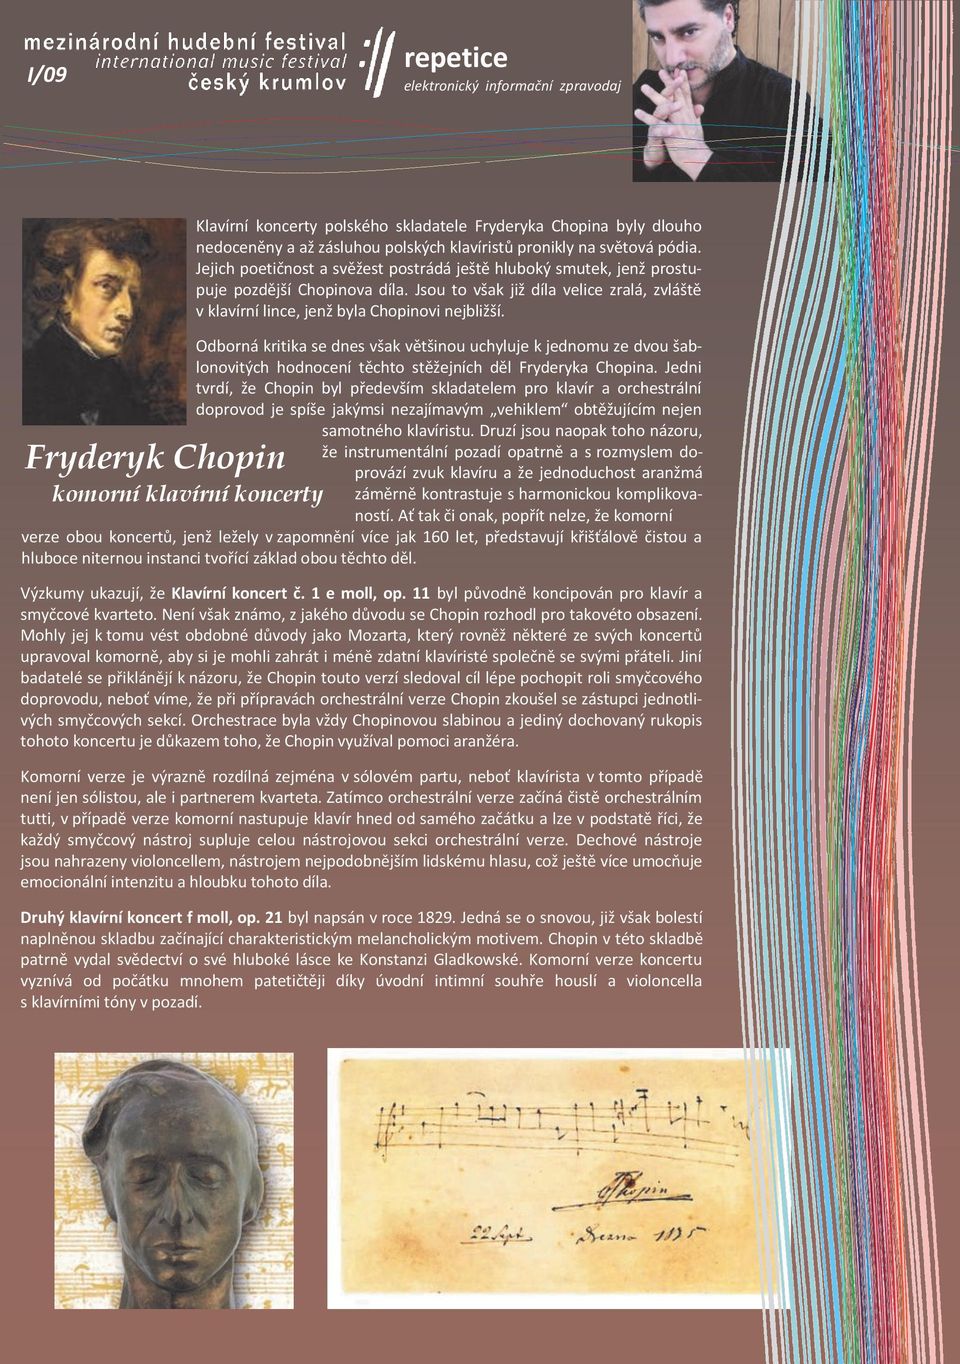 Odborná kritika se dnes však většinou uchyluje k jednomu ze dvou šablonovitých hodnocení těchto stěžejních děl Fryderyka Chopina.